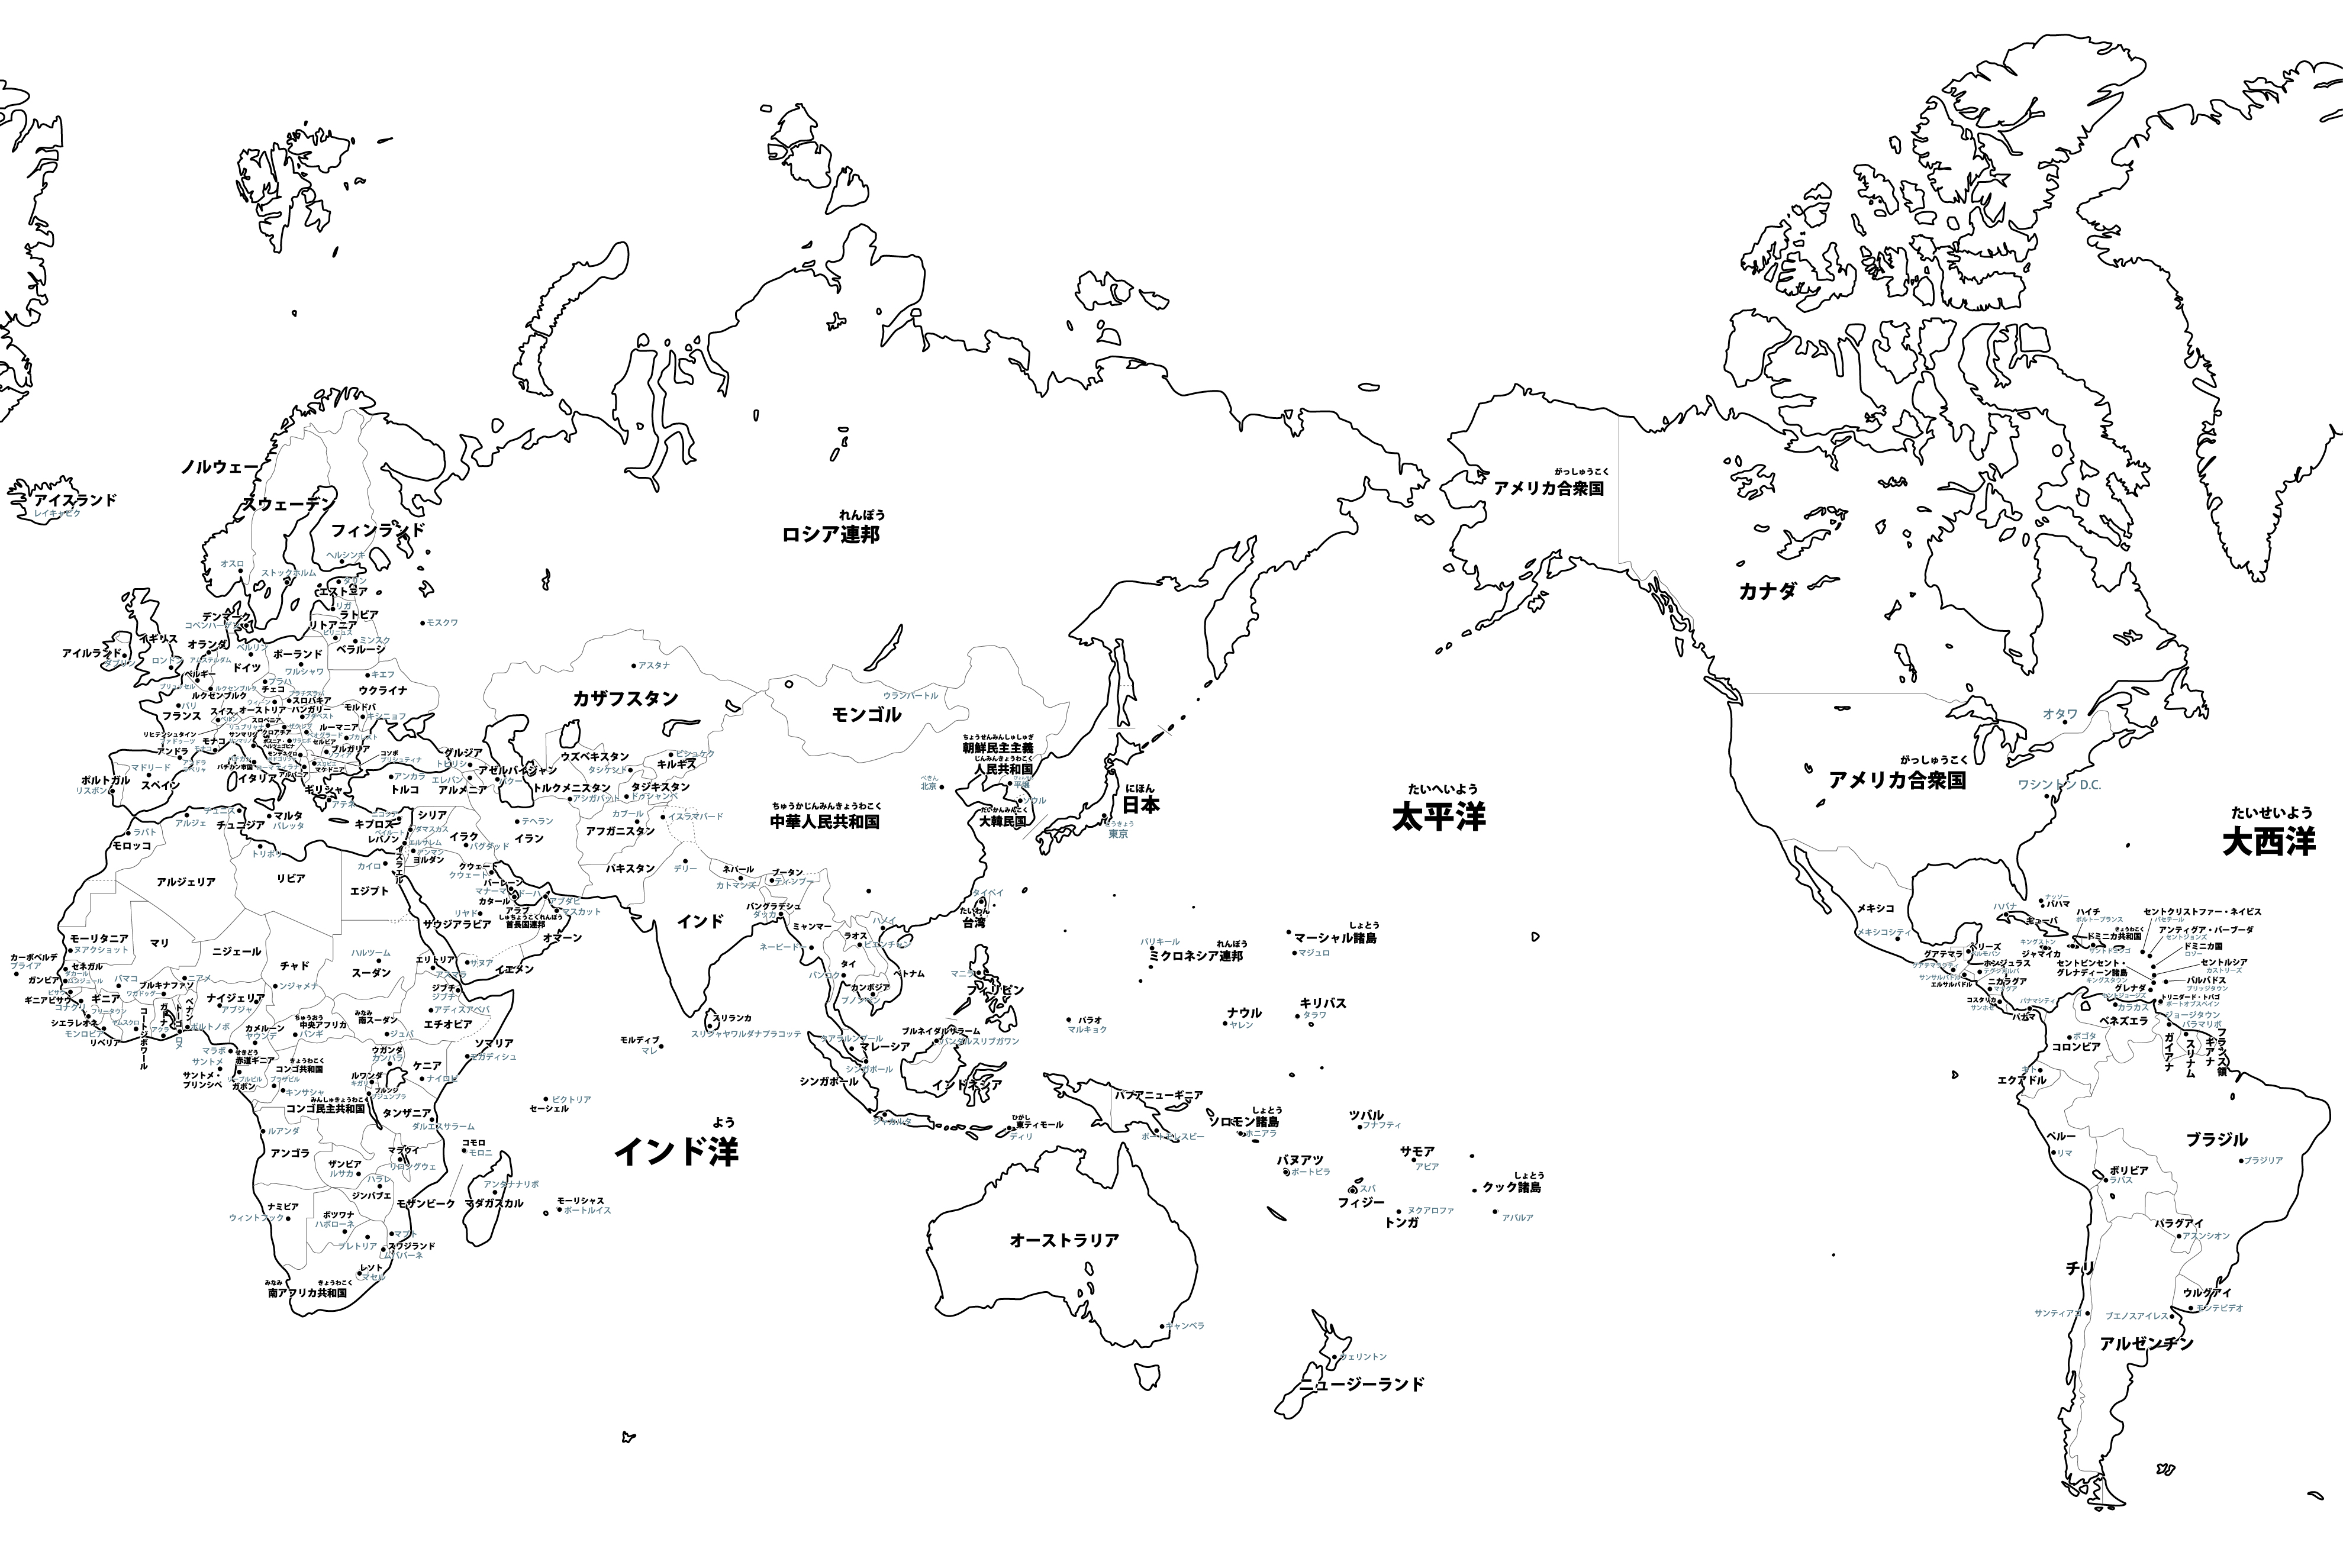 アジア大陸の白地図イラスト 国名入り 首都名入り を無料ダウンロード